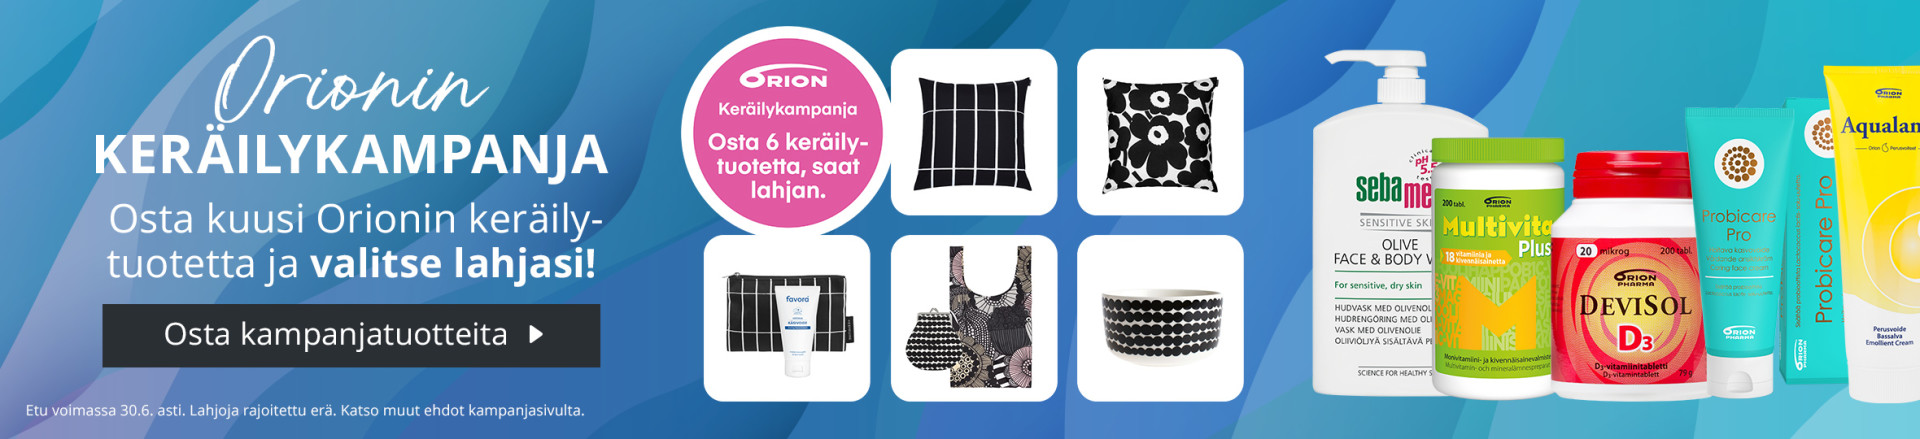 Orionin keräilykampanja | Osta kuusi Orionin keräilytuotetta ja kerää lahjoja!